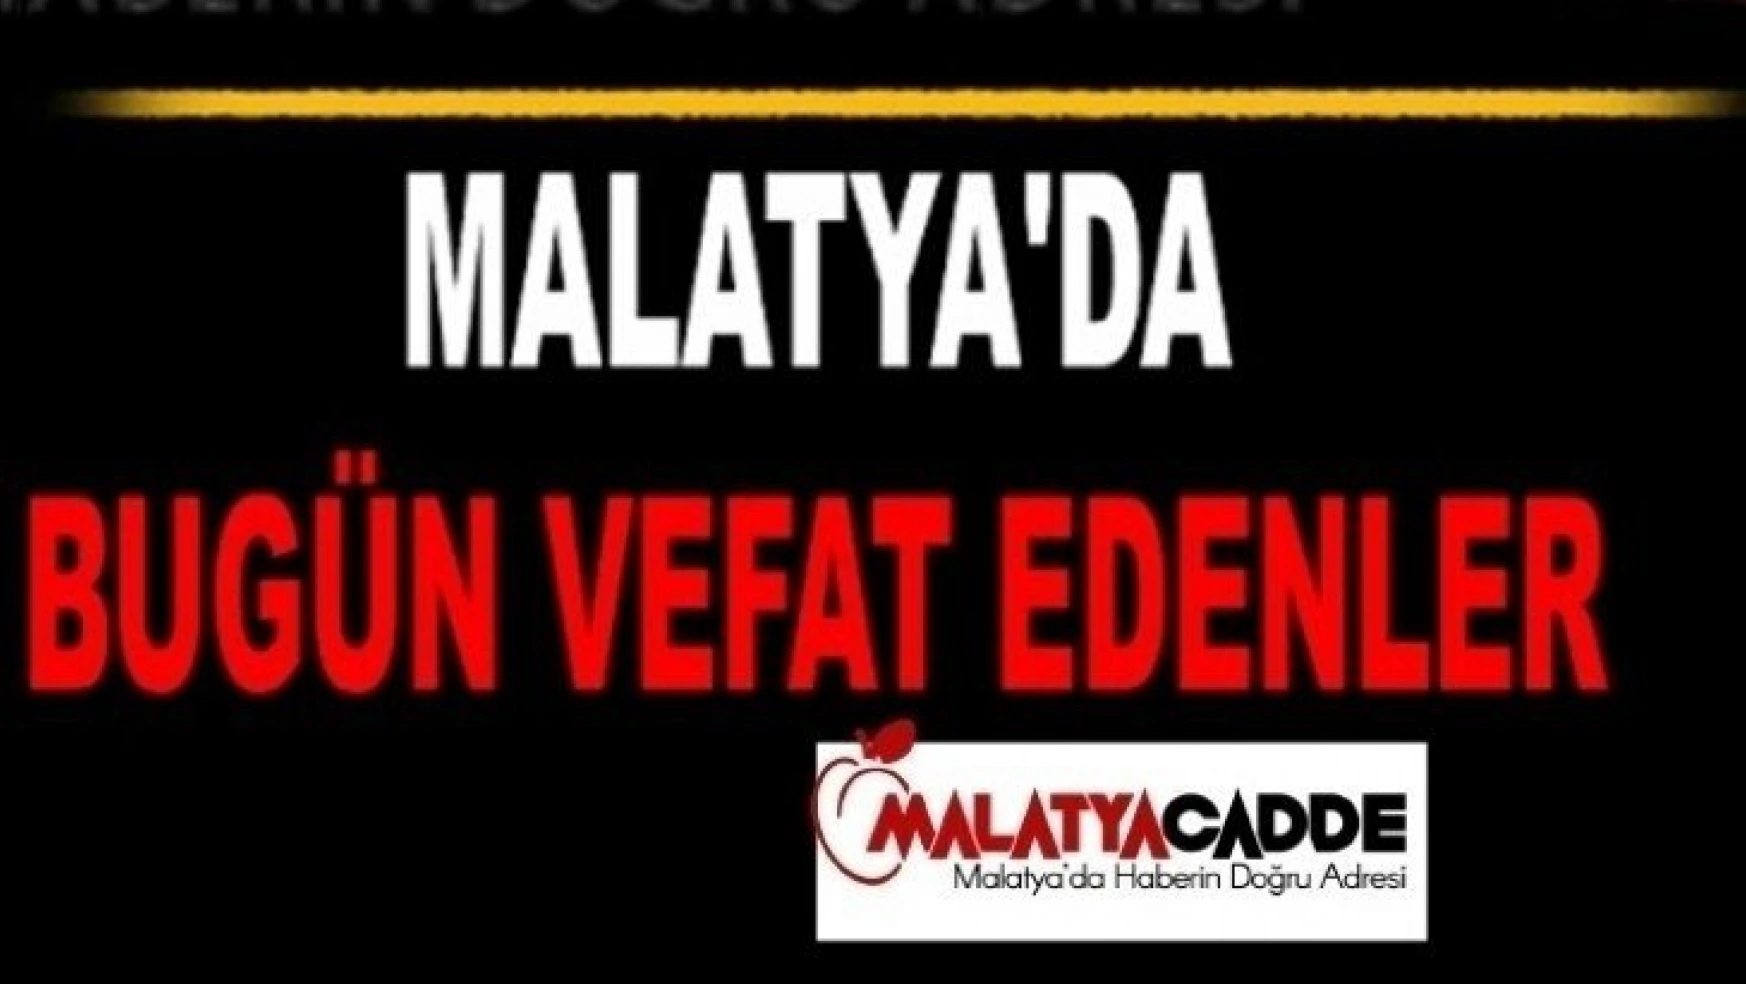 Malatya'da Bugün 20 Kişi Vefat Etti..